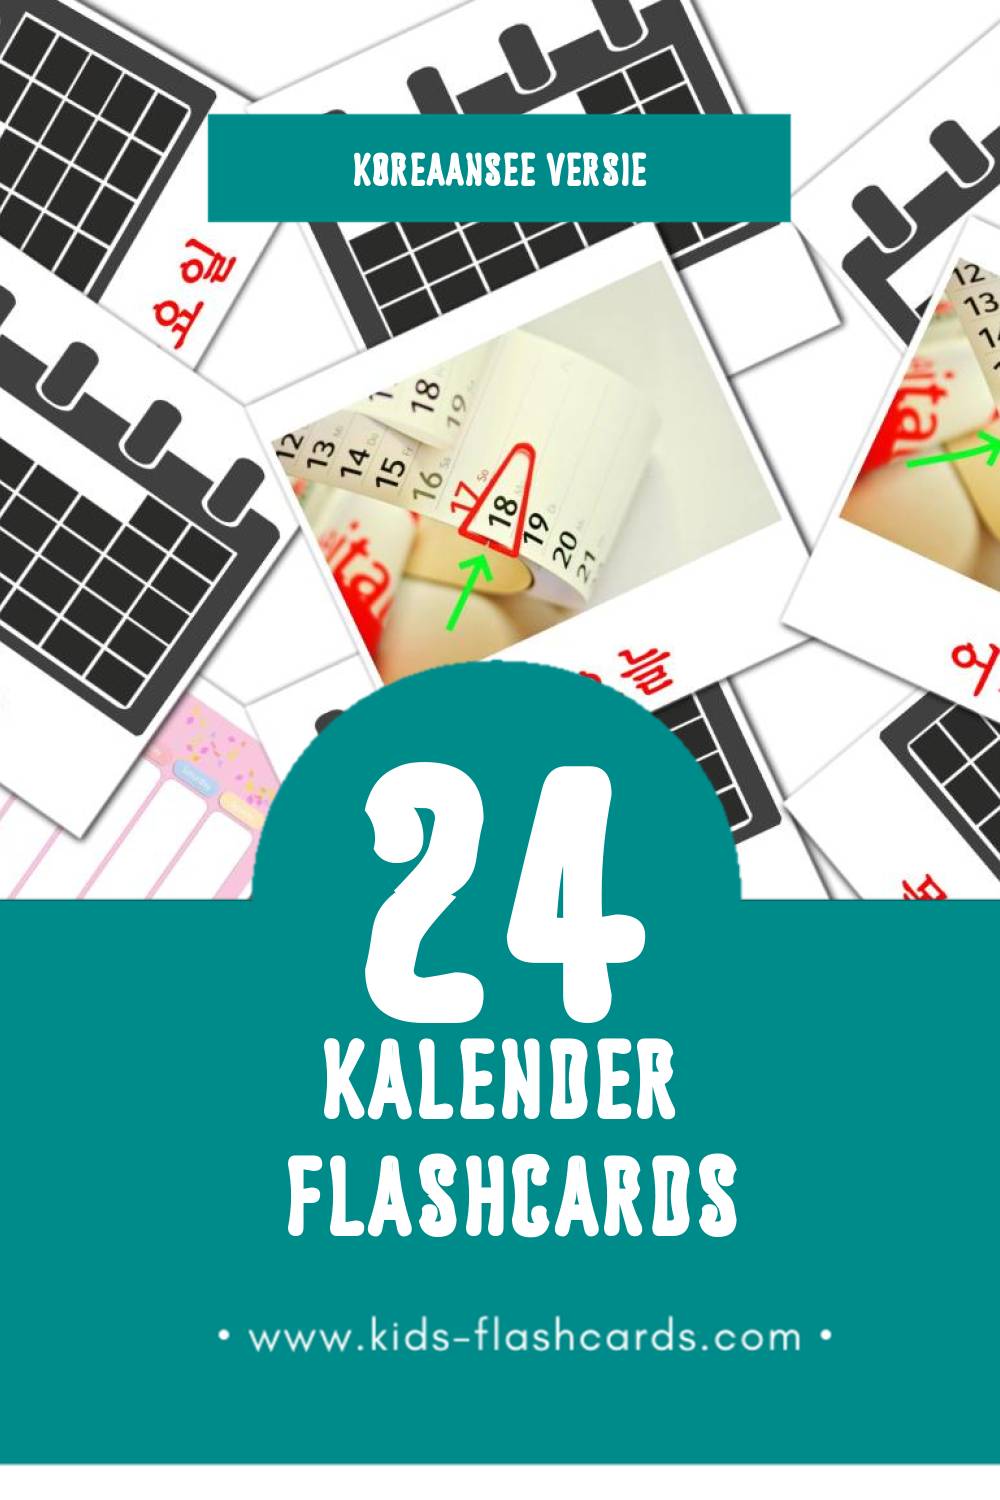 Visuele 날씨 Flashcards voor Kleuters (24 kaarten in het Koreaanse)